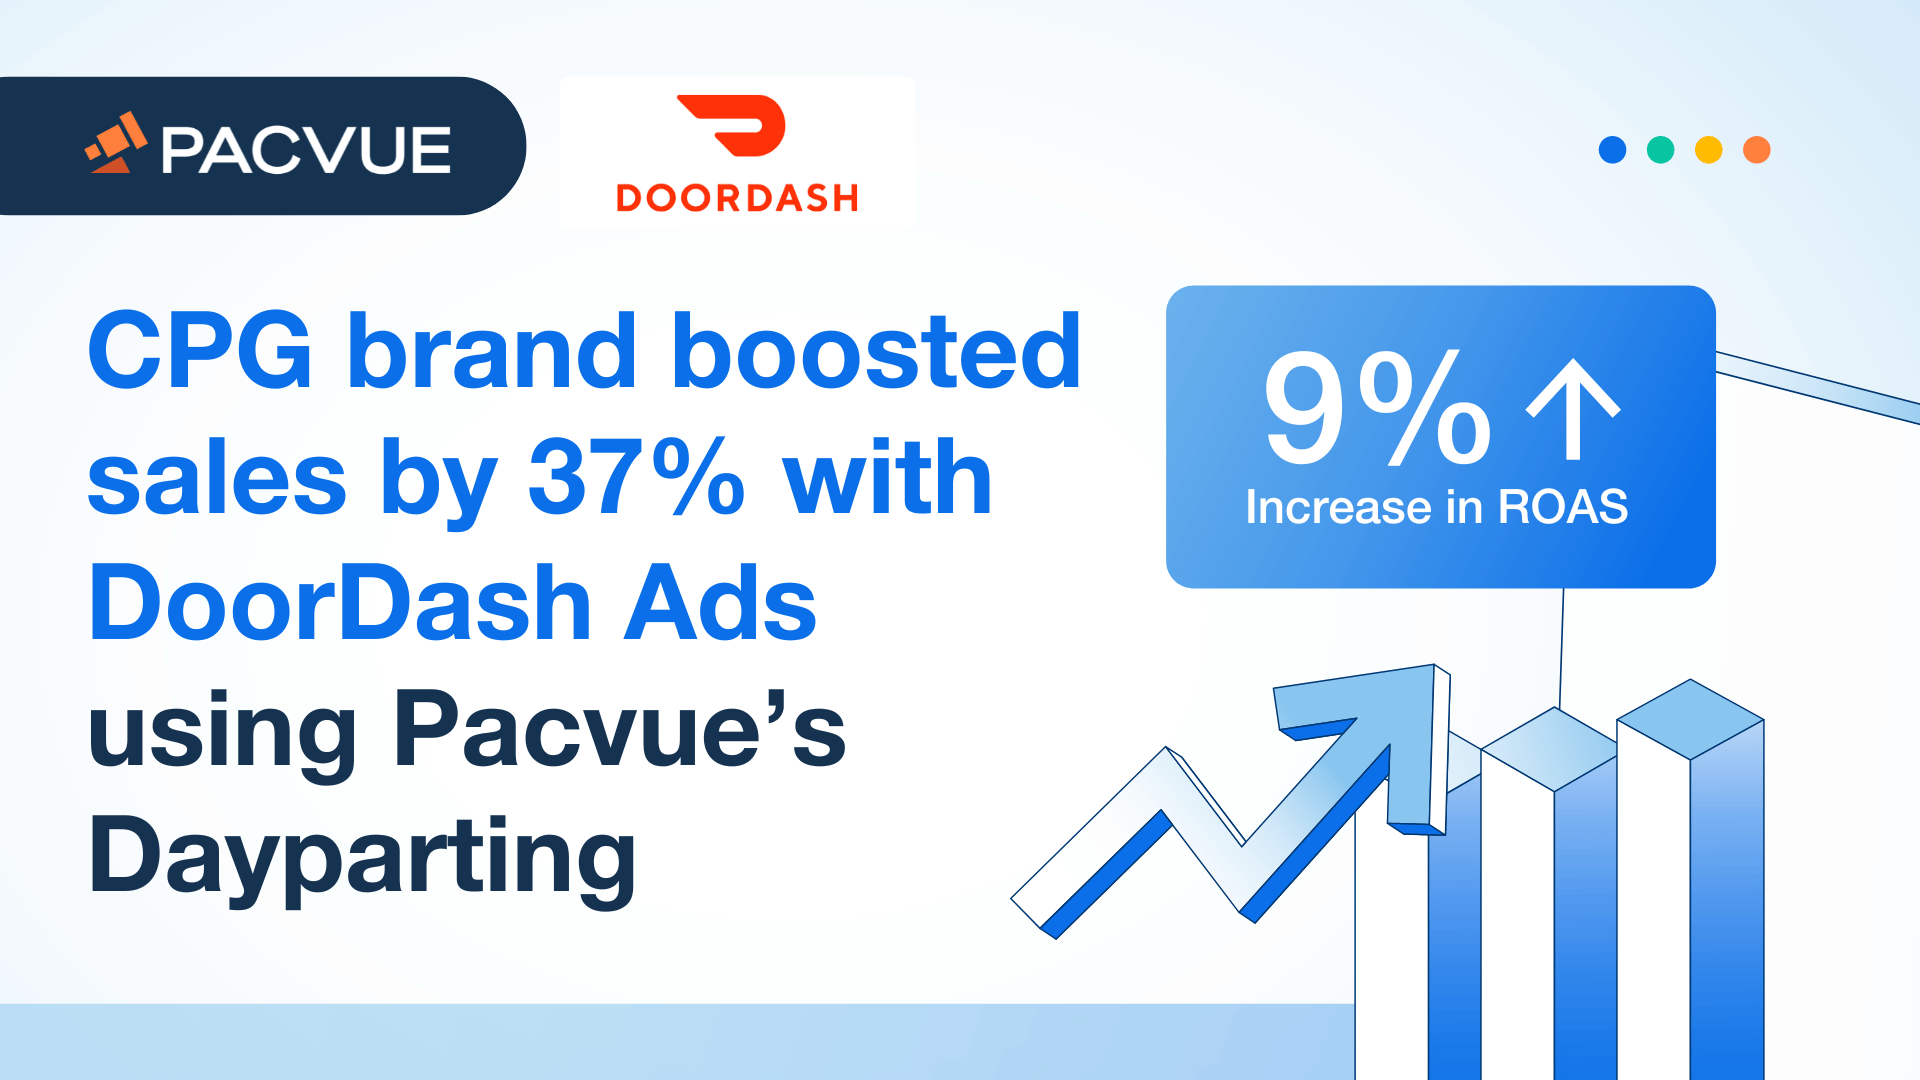 Pacvue「Dayparting」を利用したDoorDash広告で、CPGブランドが売上を37%伸ばした。